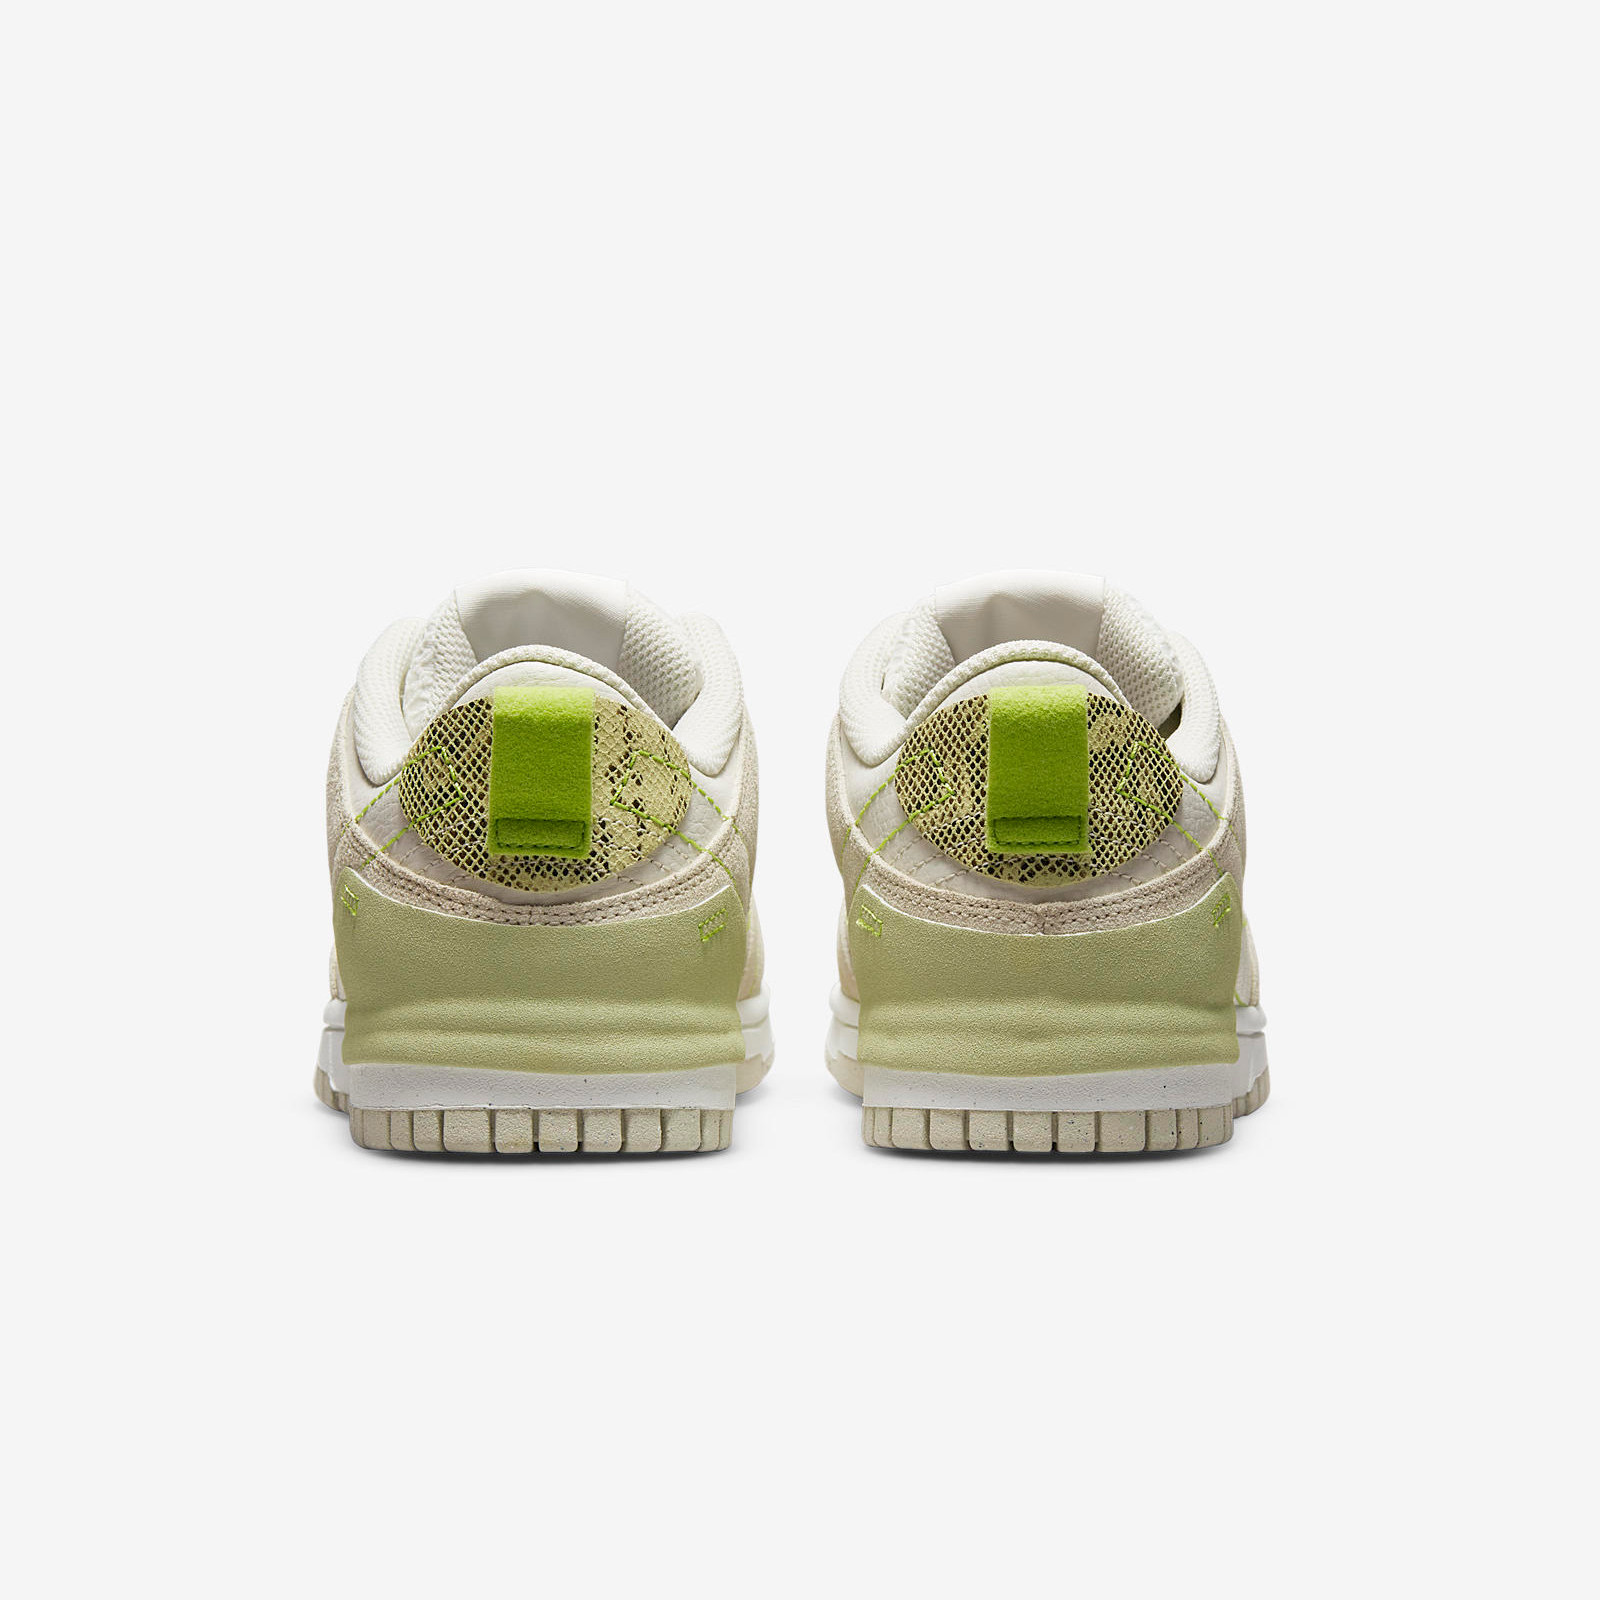 Nike Dunk Low
Disrupt 2
« Green Snake »